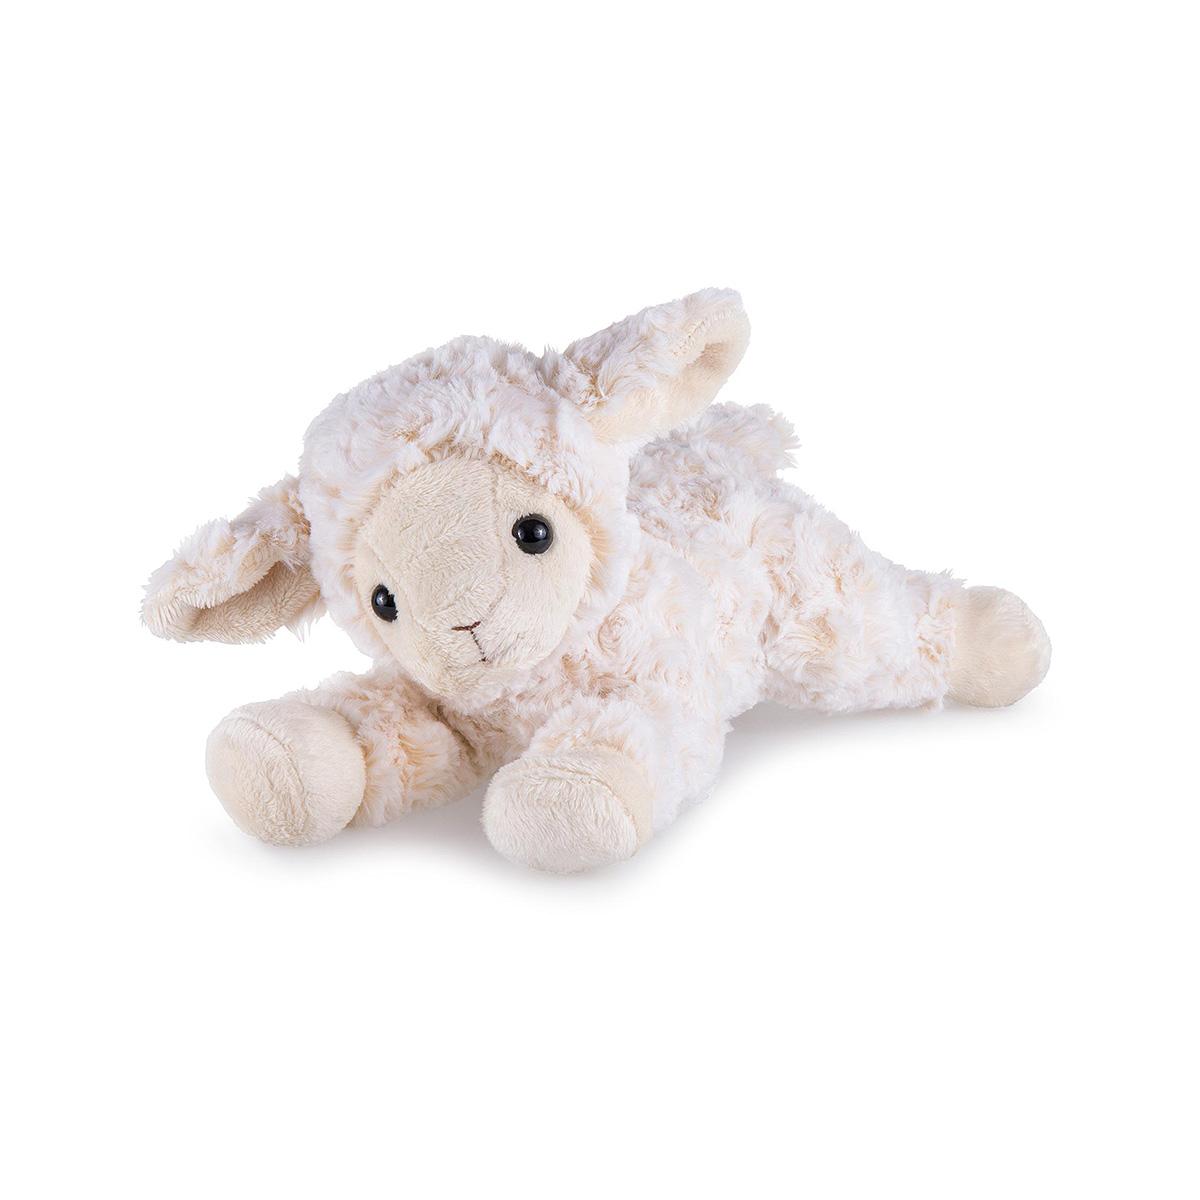  Blessing Lamb Plush Toy